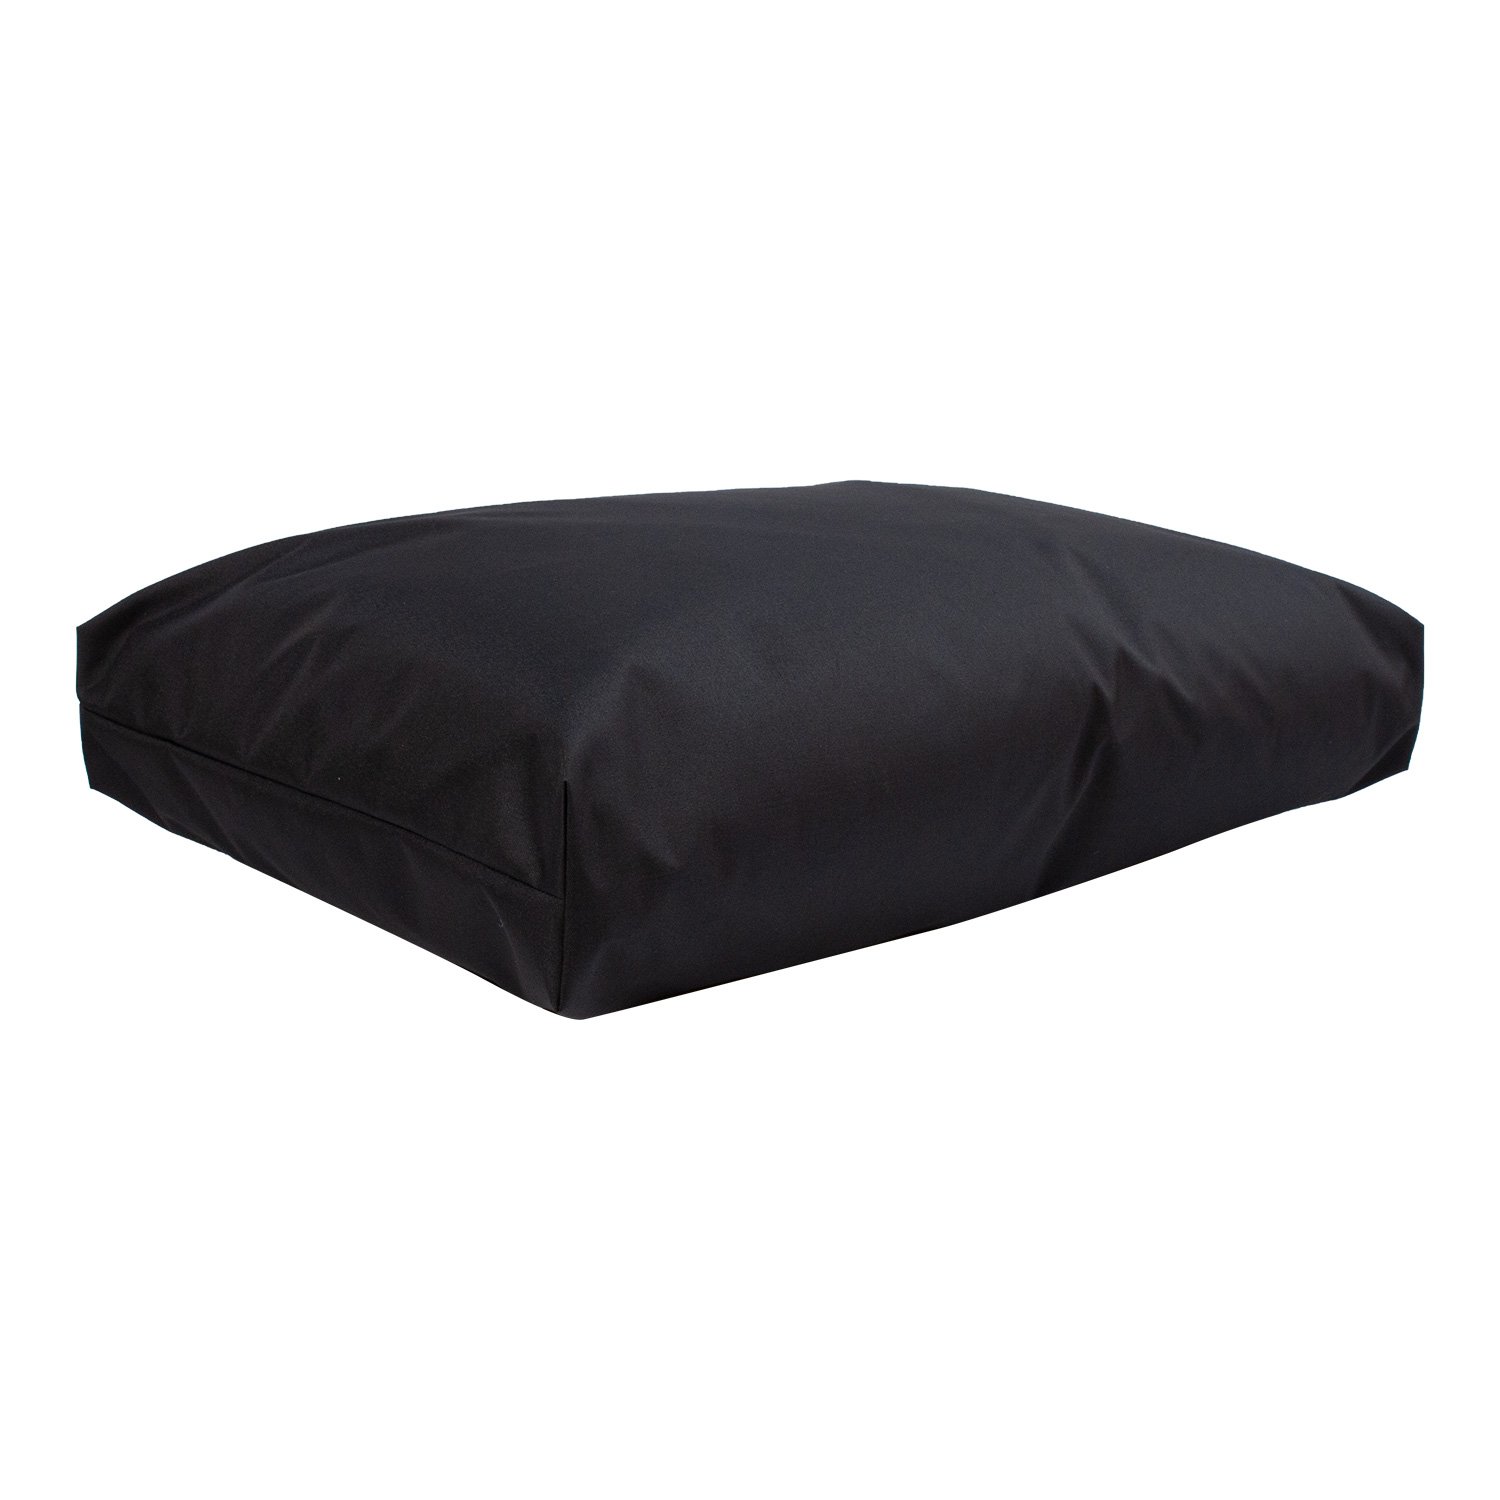 Grindų pagalvė MR. BIG 60x40xH16 cm, juoda